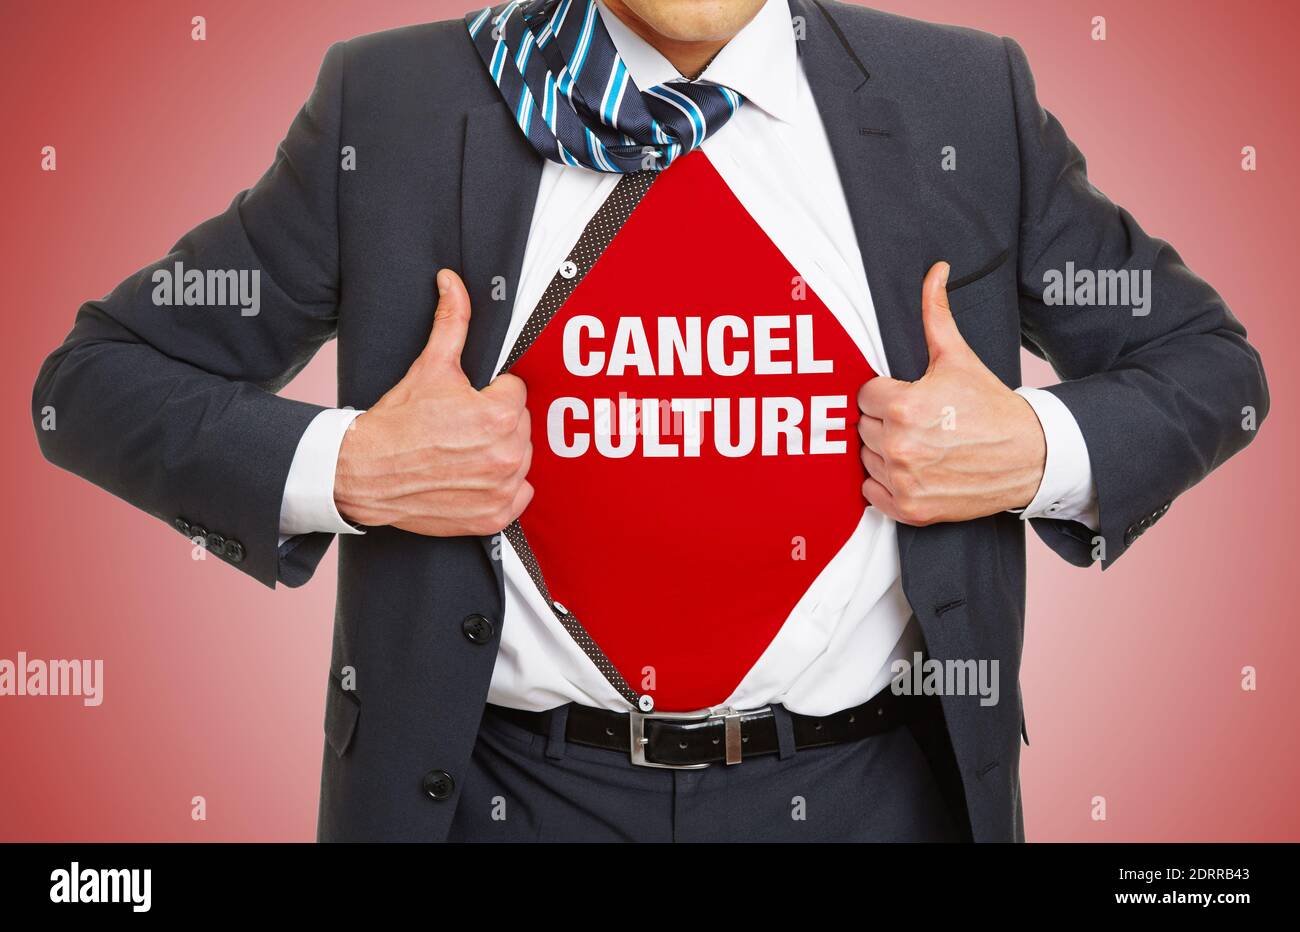 Abbrechen Kultur Business-Konzept mit roten Schriftzug unter Shirt von Geschäftsmann Stockfoto